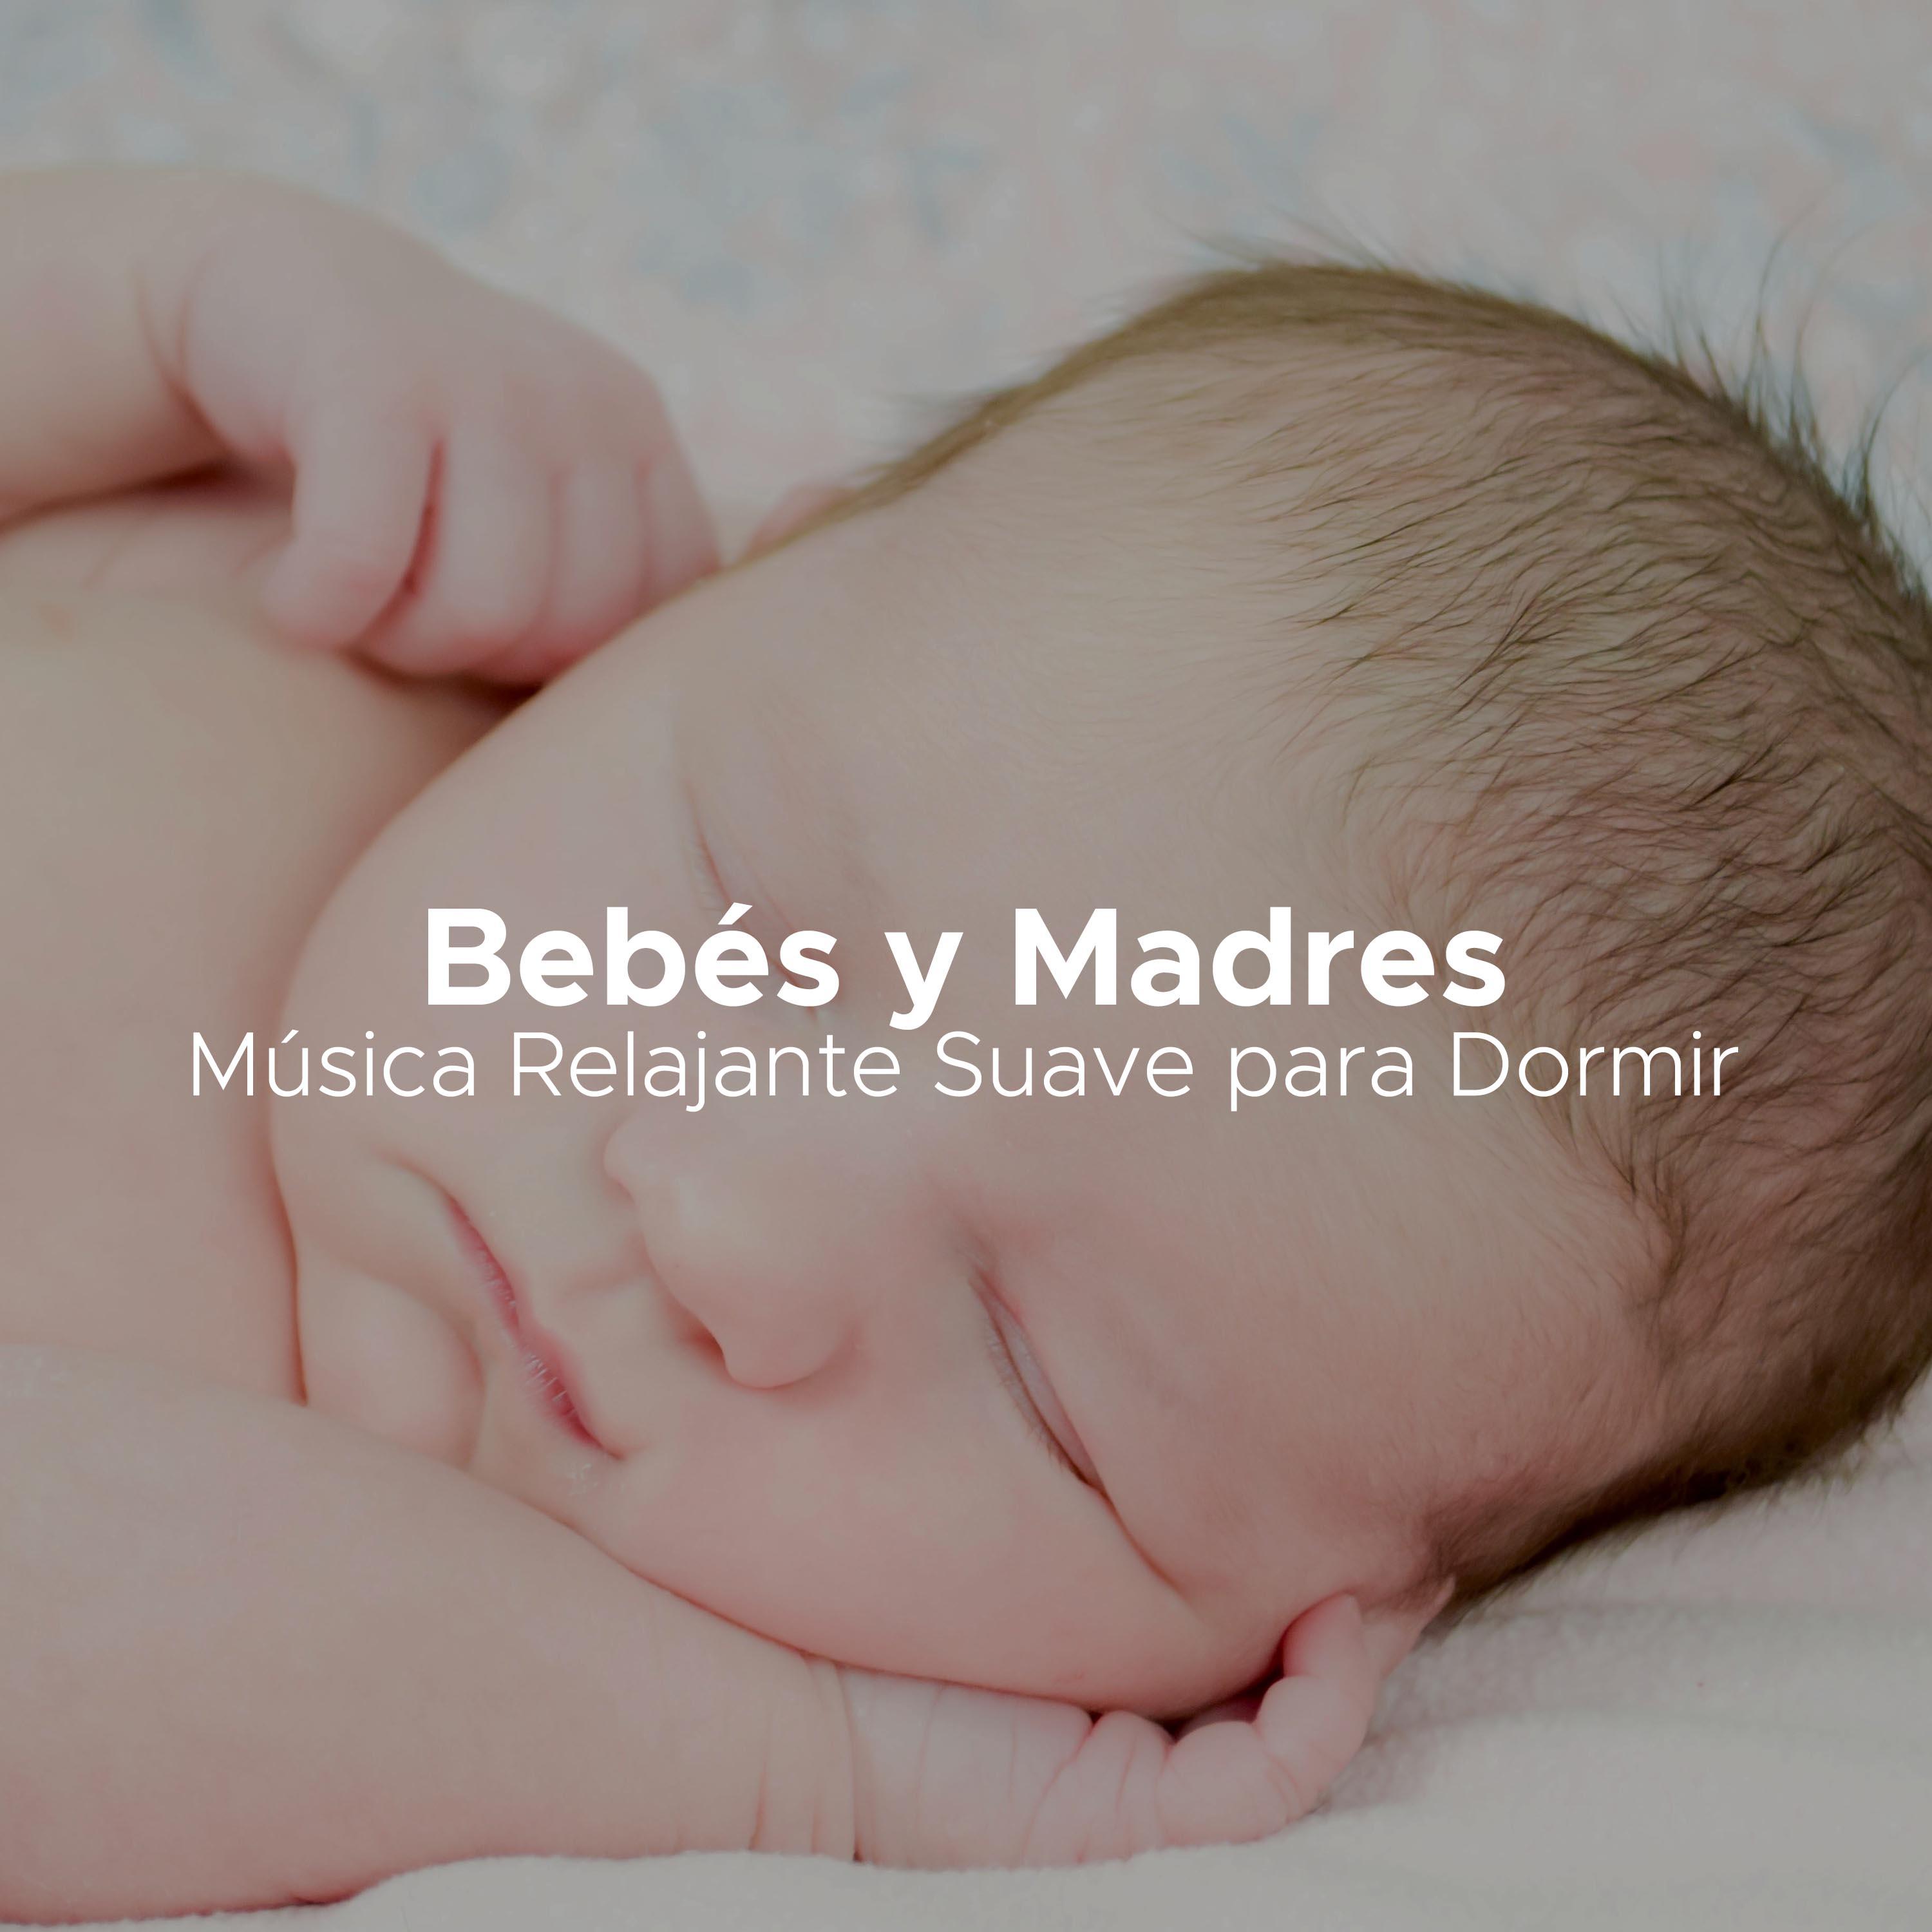 Bebes y Madres - Música Relajante Suave para Dormir (Embarazo, Maternidad, Embarazo, Relajar a los Bebes)